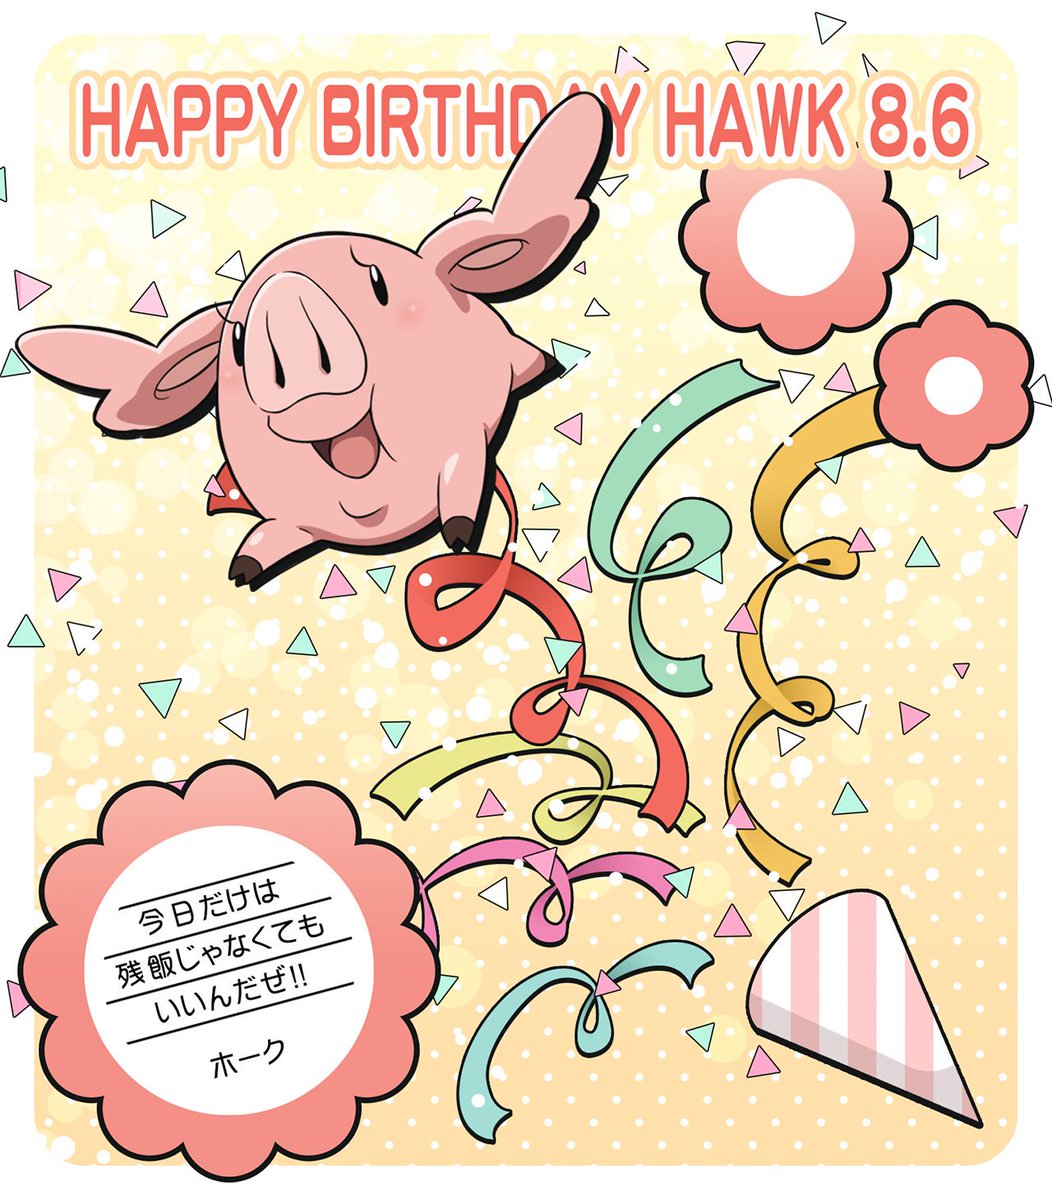 Tvアニメ 劇場版 七つの大罪 ホーク誕生祭 本日8月6日はホークの誕生日 ハッシュタグ ホーク誕生祭 をつけて みんなでホークの誕生日をお祝いしましょう 公式サイトでは壁紙をプレゼント中です 七つの大罪